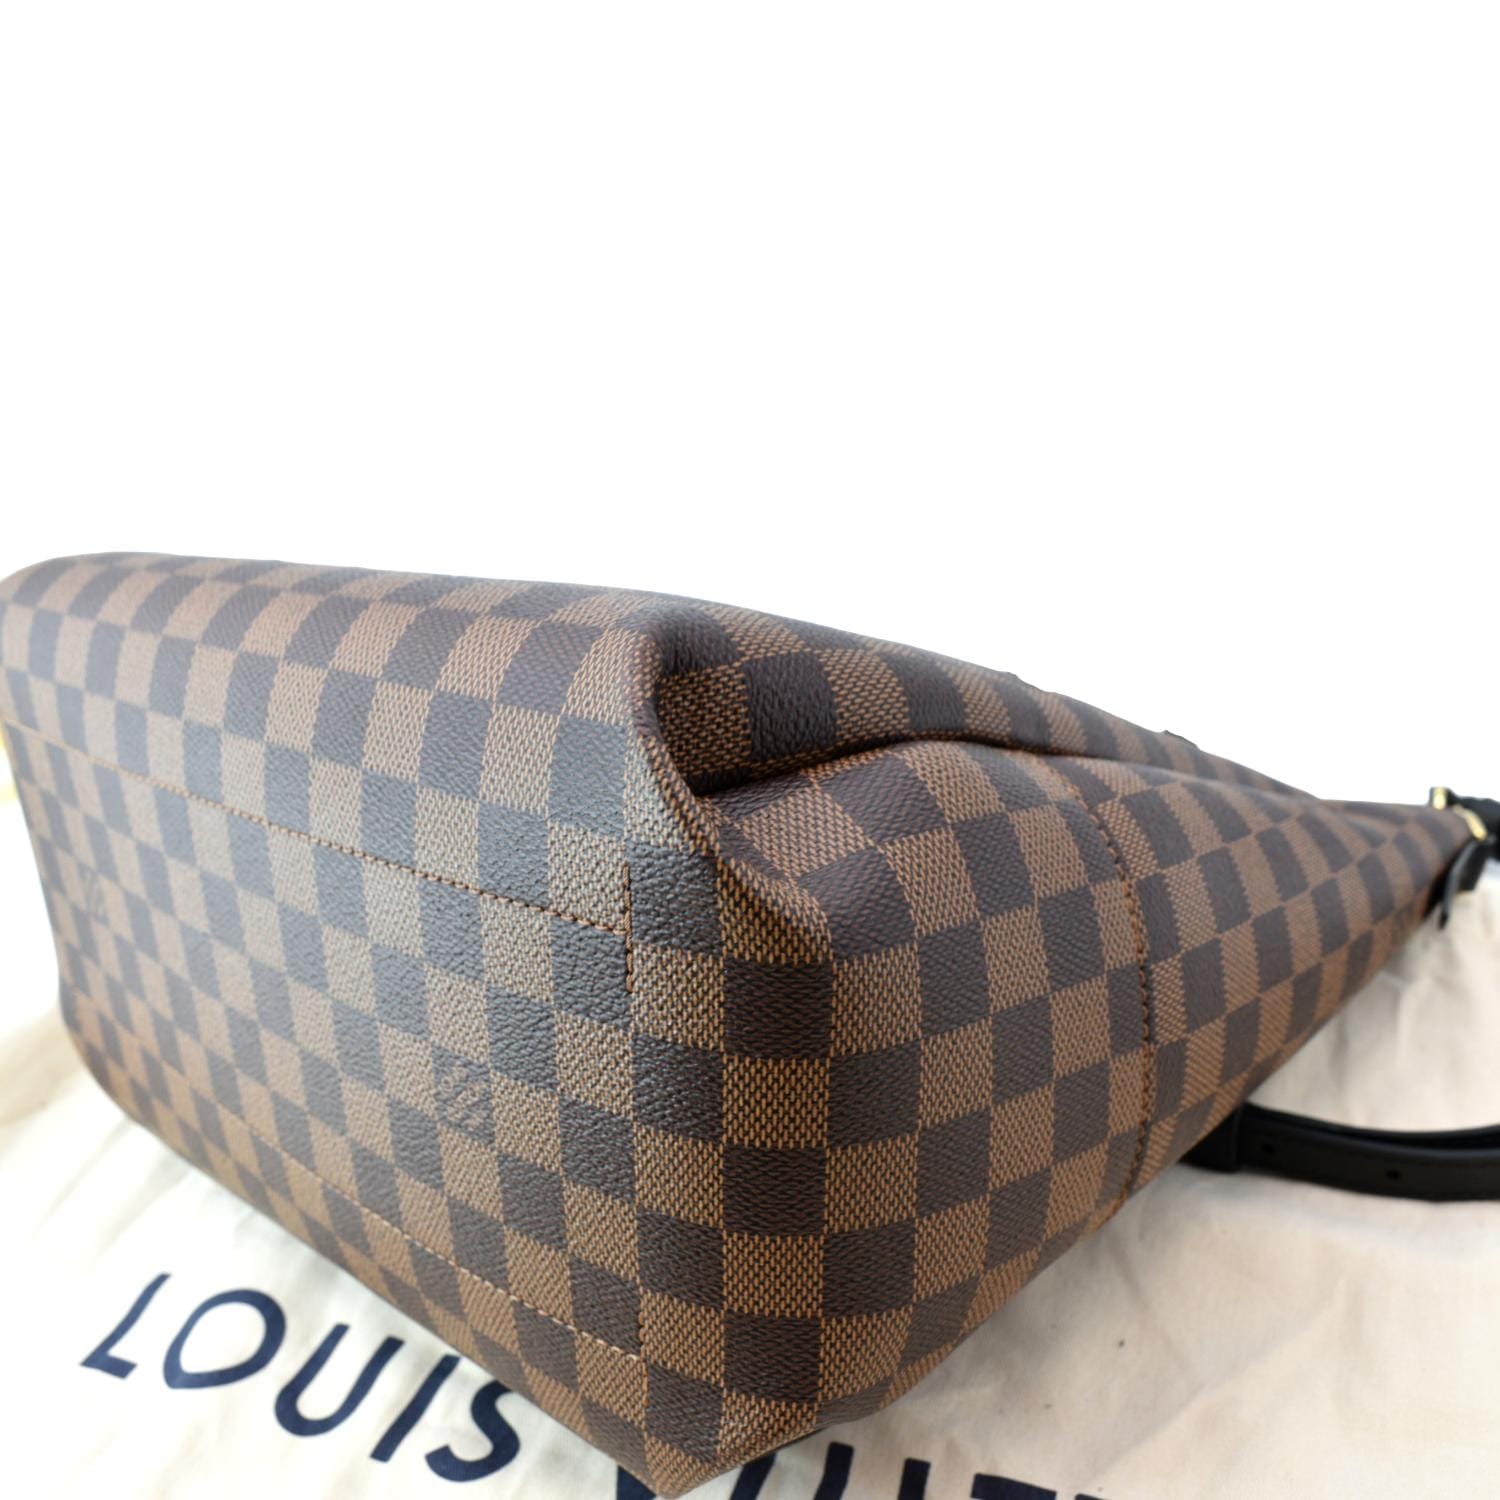 Louis Vuitton Belmont Damier Ebene Top Handle Bag on SALE